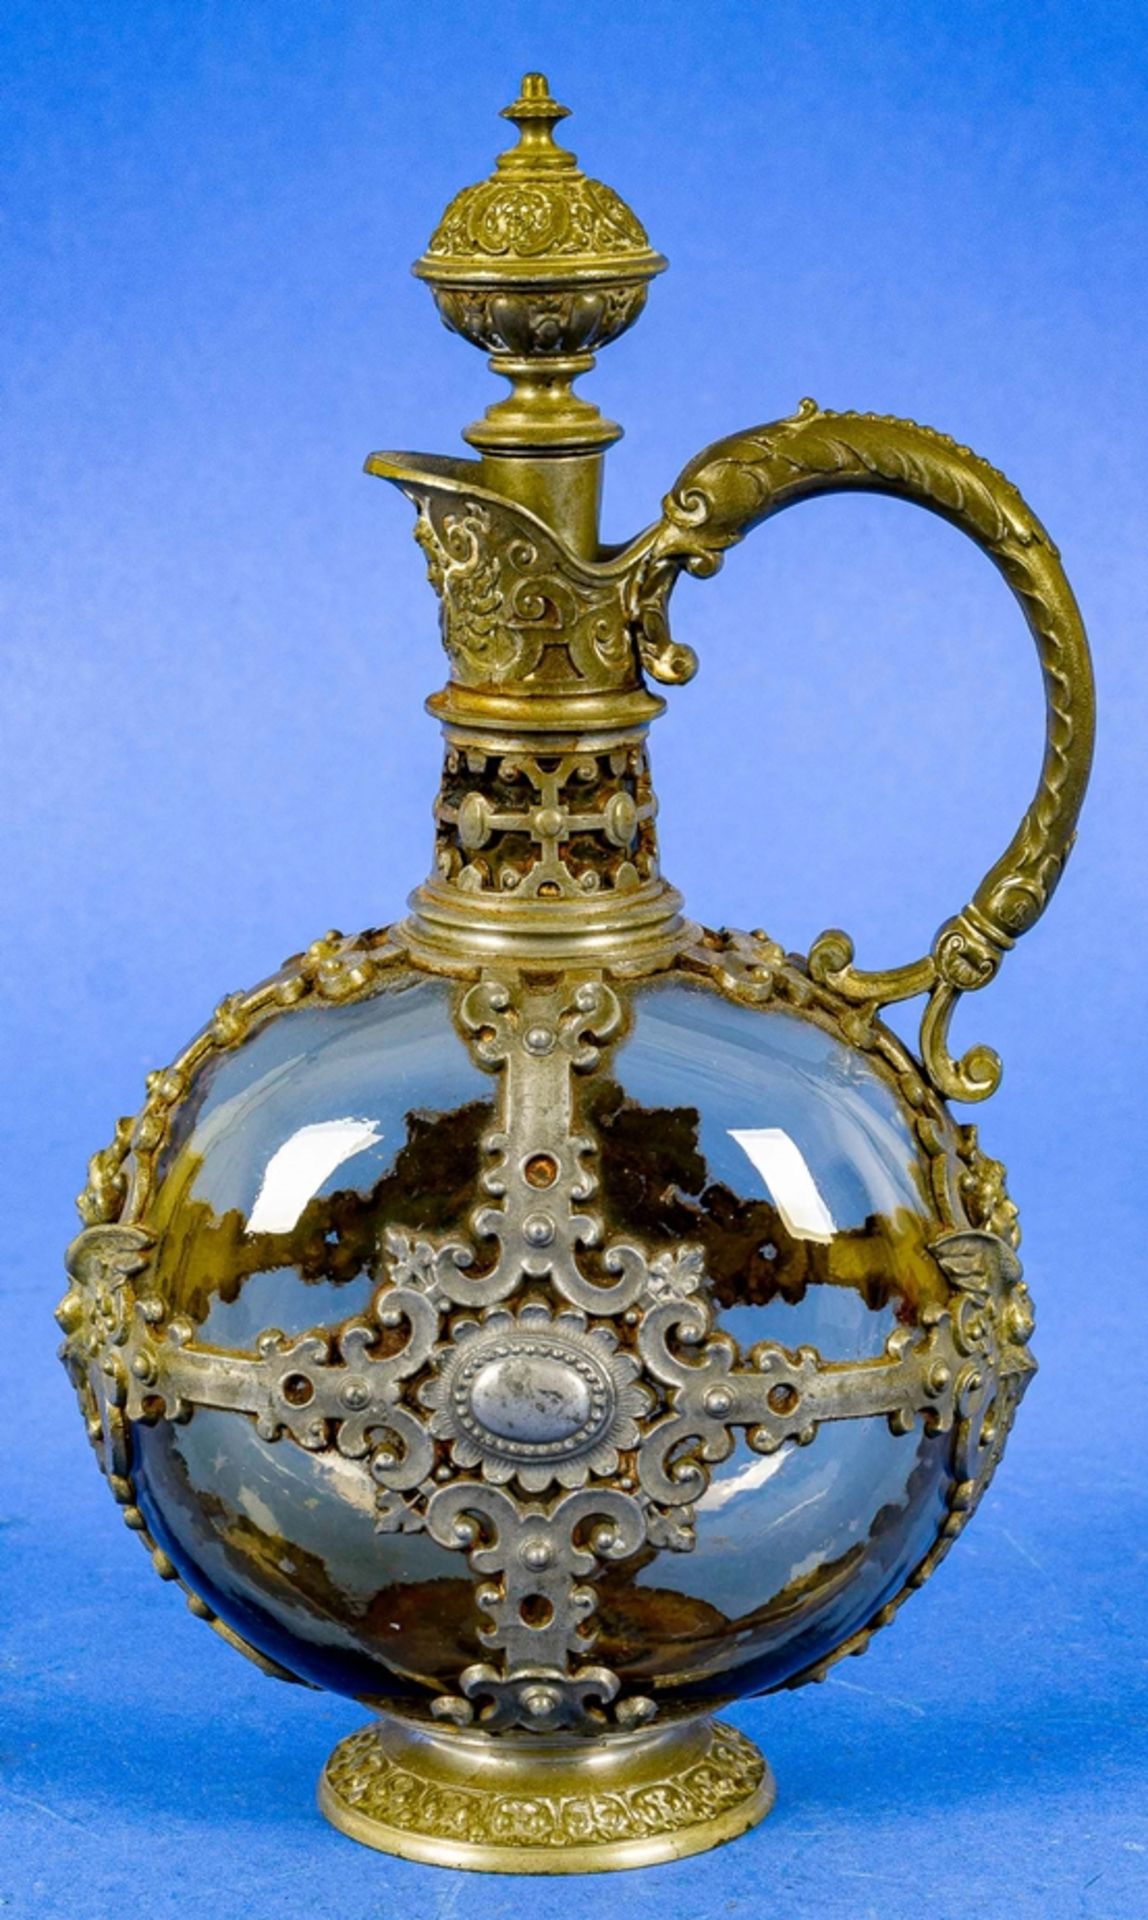 Kleine Karaffe für Likör o. ä., gelbliches Glas mit aufwändiger Zinnmontur, Historismus um 1900. Hö